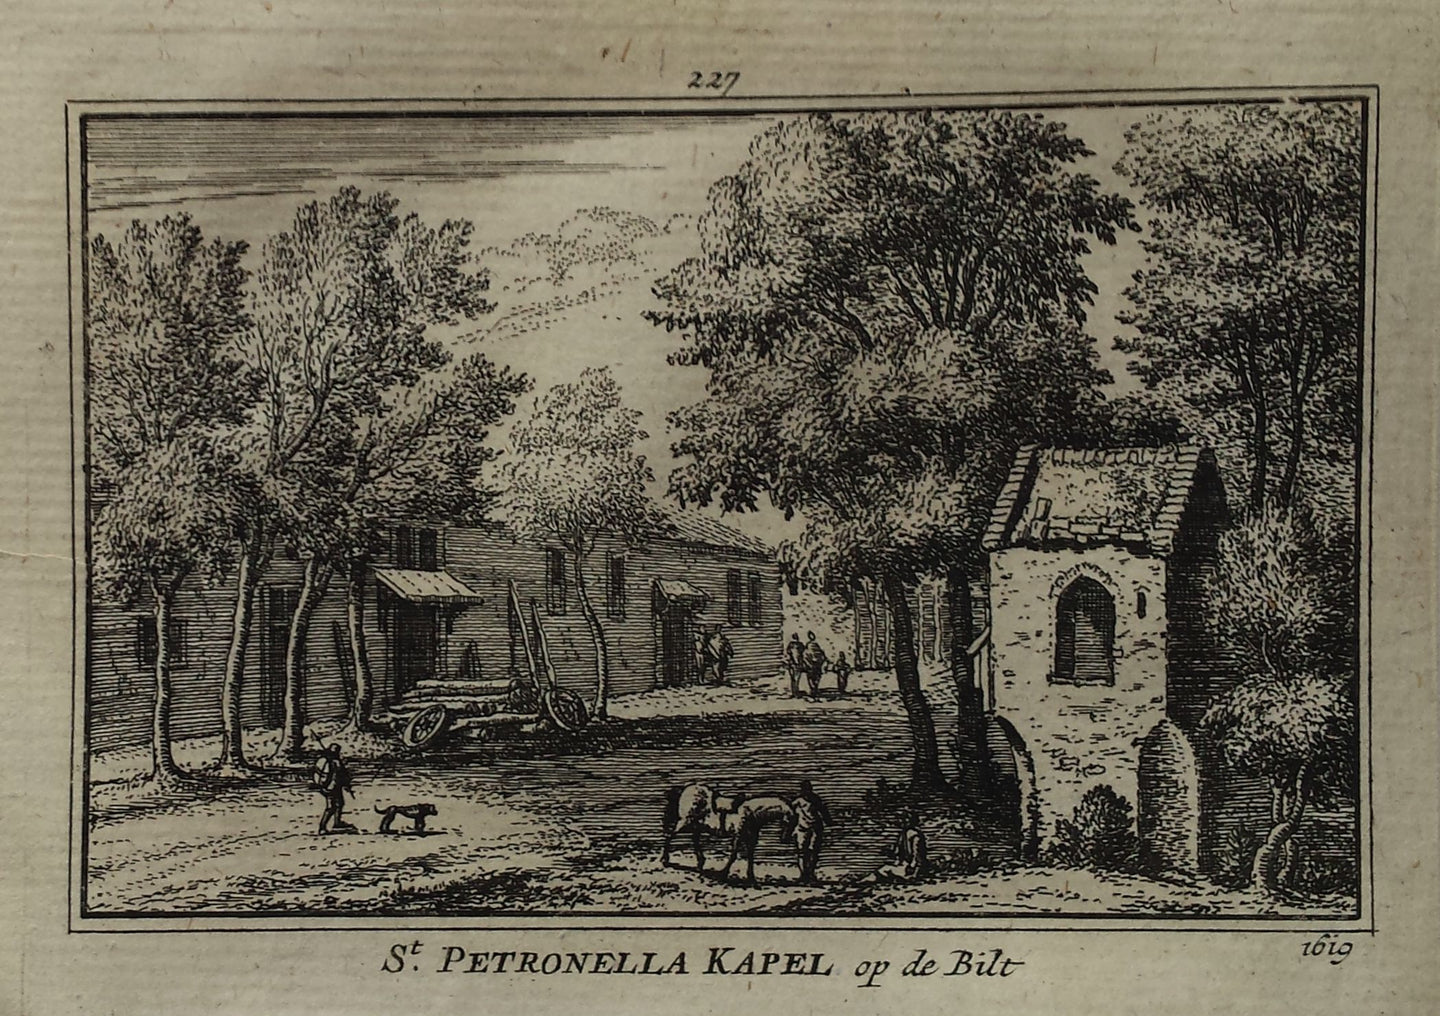 De Bilt Sint Petronella's Kapel - A Rademaker / JA Crajenschot - 1792